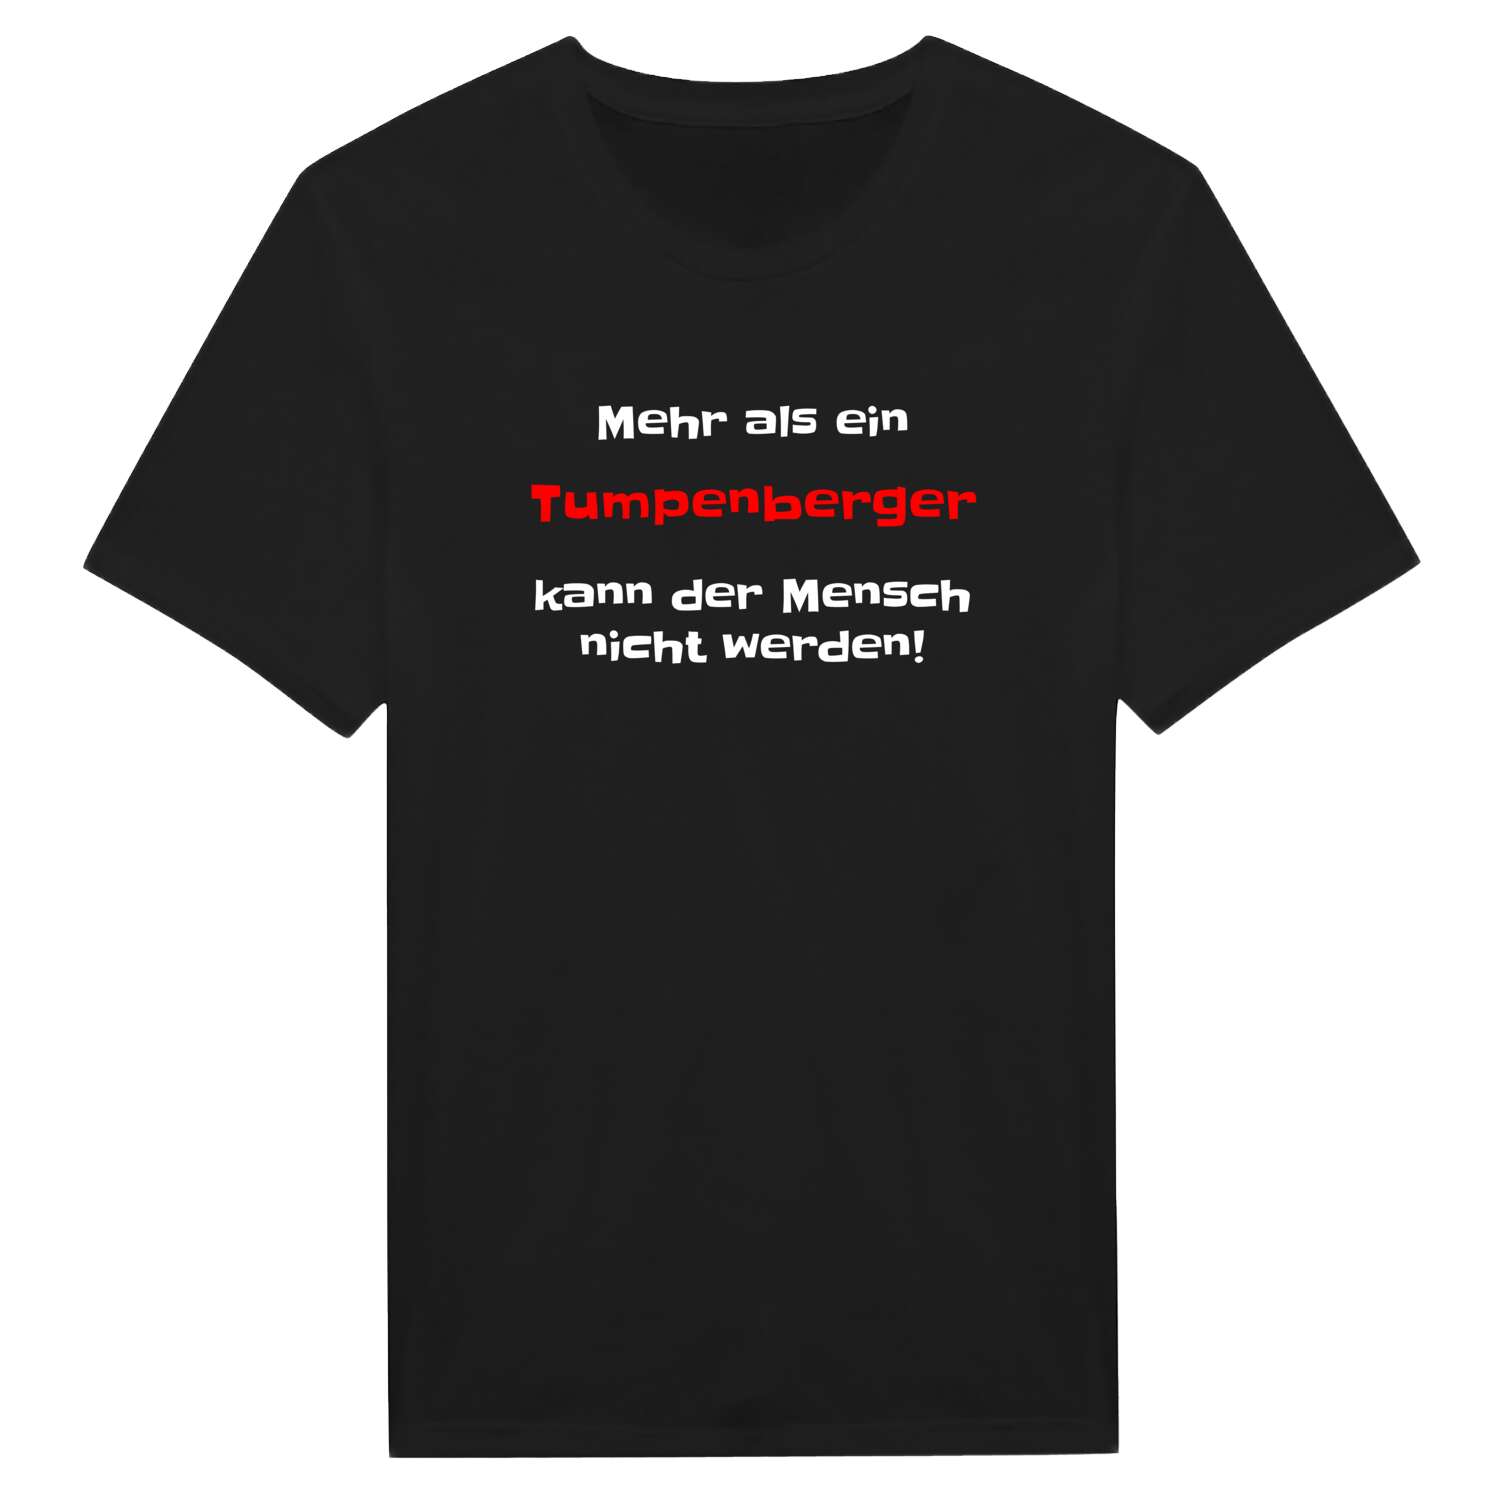 Tumpenberg T-Shirt »Mehr als ein«